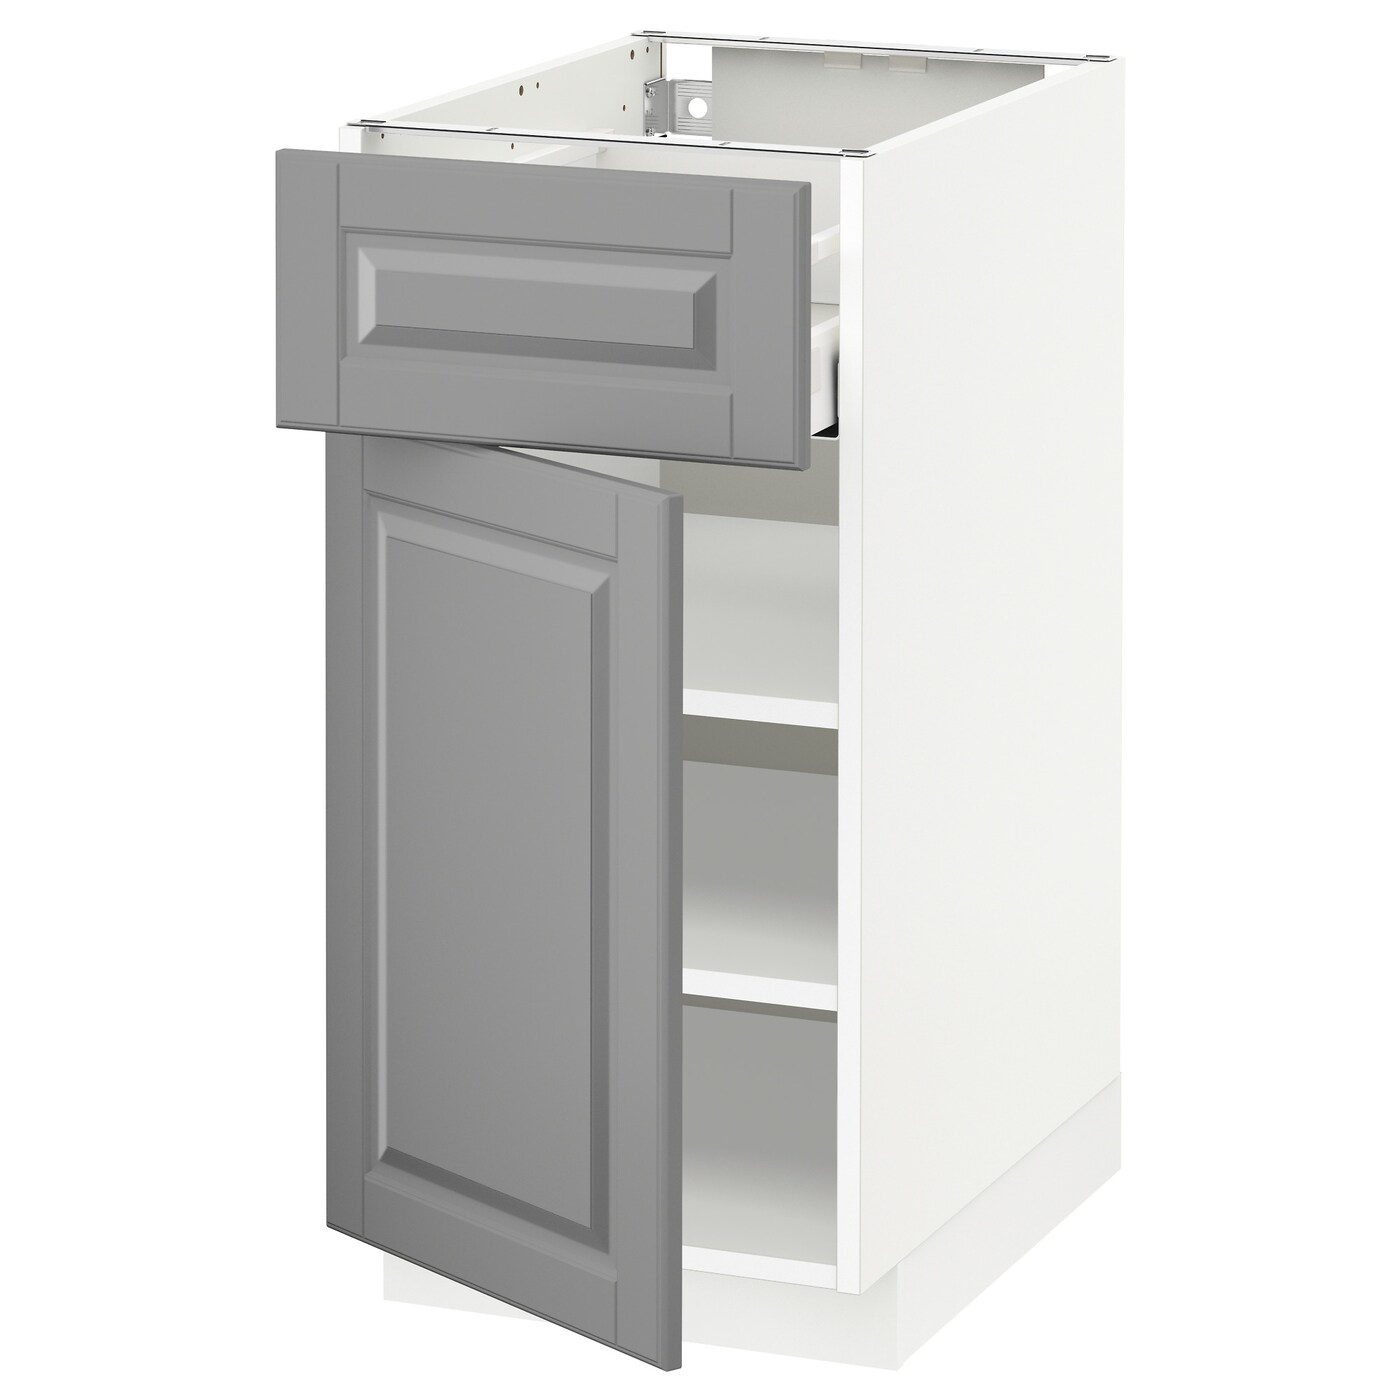 Напольный кухонный шкаф - IKEA METOD MAXIMERA, 88x62x40см, белый/серый, МЕТОД МАКСИМЕРА ИКЕА